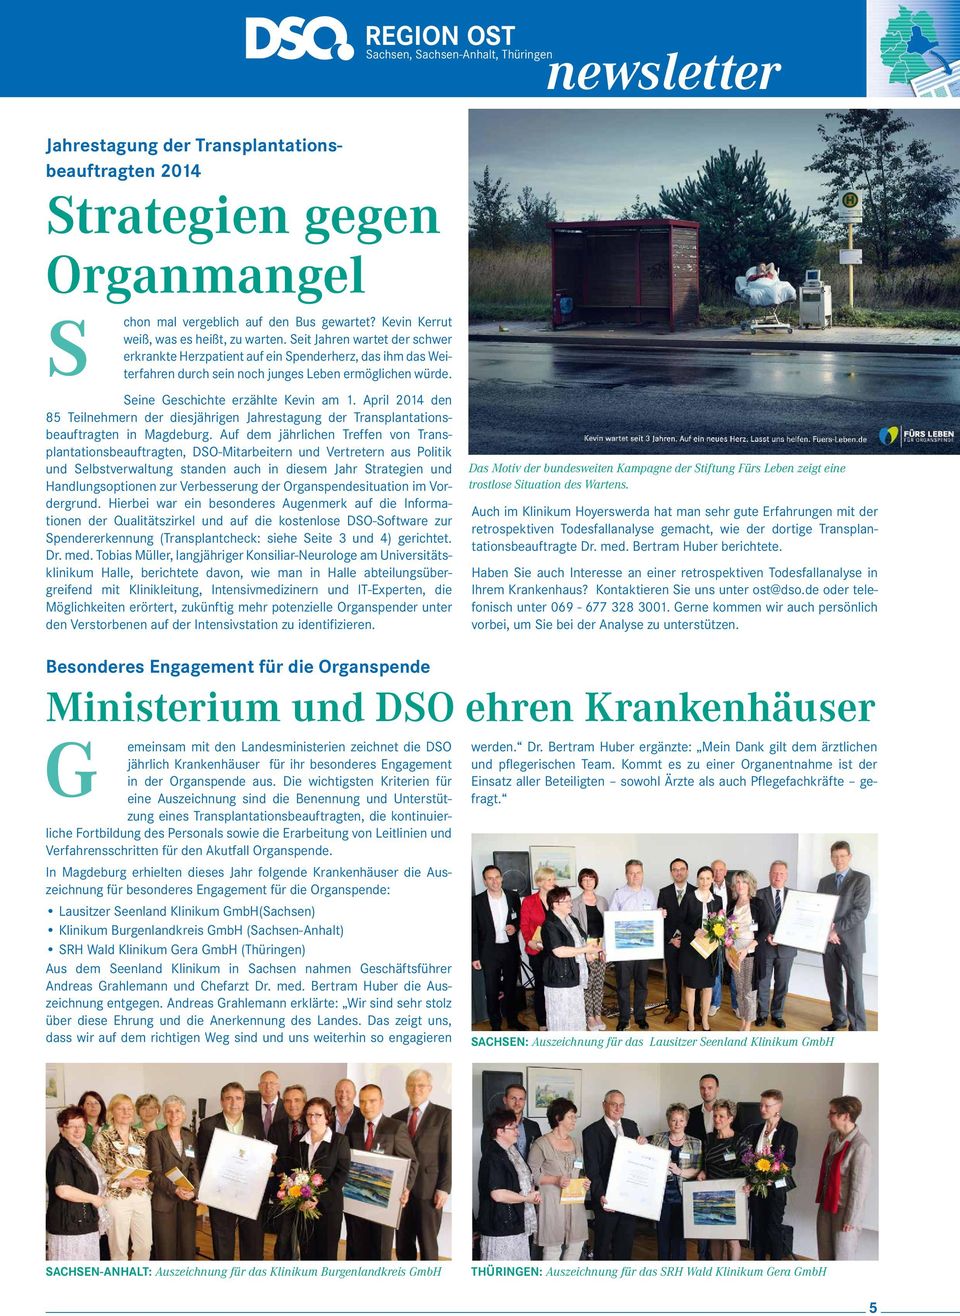 April 2014 den 85 Teilnehmern der diesjährigen Jahrestagung der Transplantationsbeauftragten in Magdeburg.